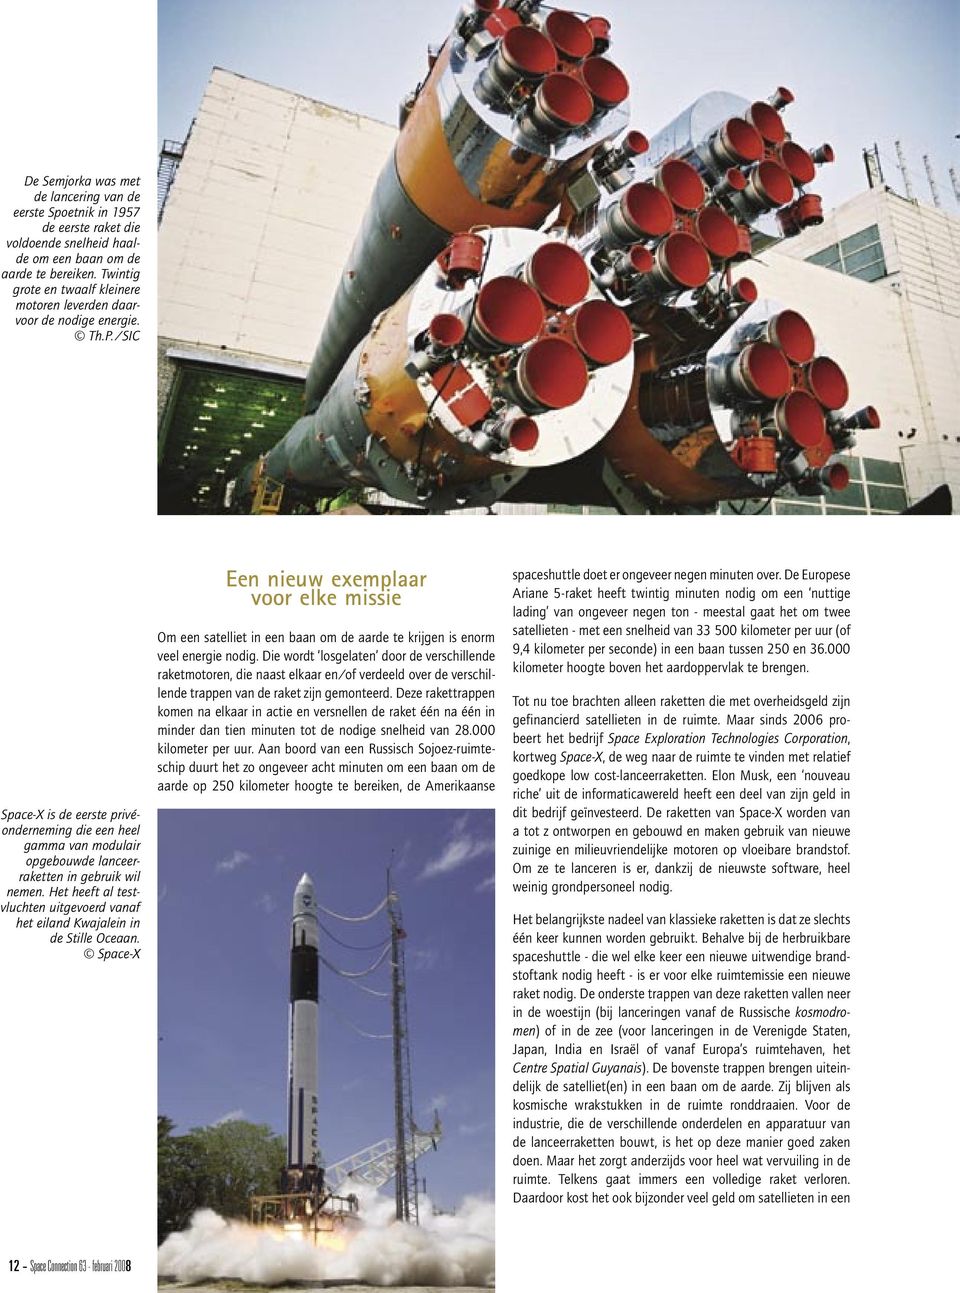 /SIC Space-X is de eerste privéonderneming die een heel gamma van modulair opgebouwde lanceerraketten in gebruik wil nemen.